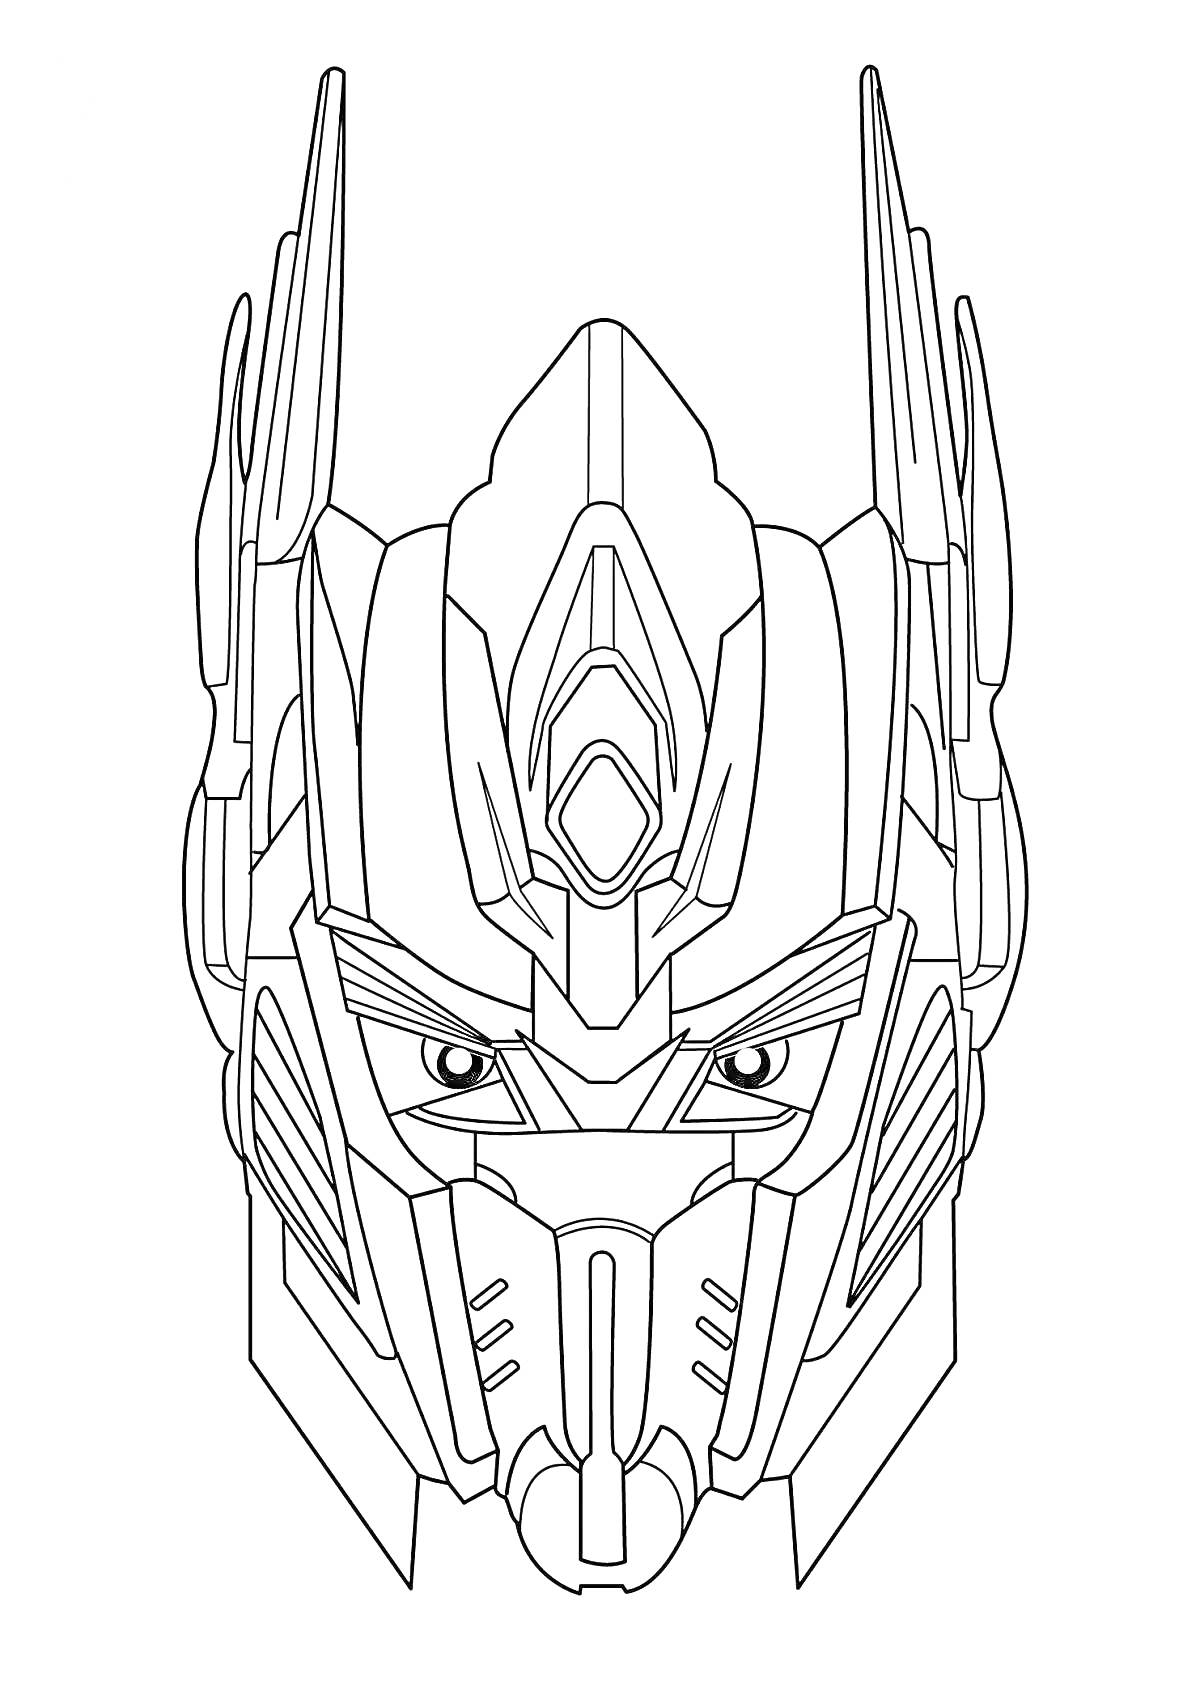 Раскраска Голова робота-трансформера с выраженными деталями и антенной